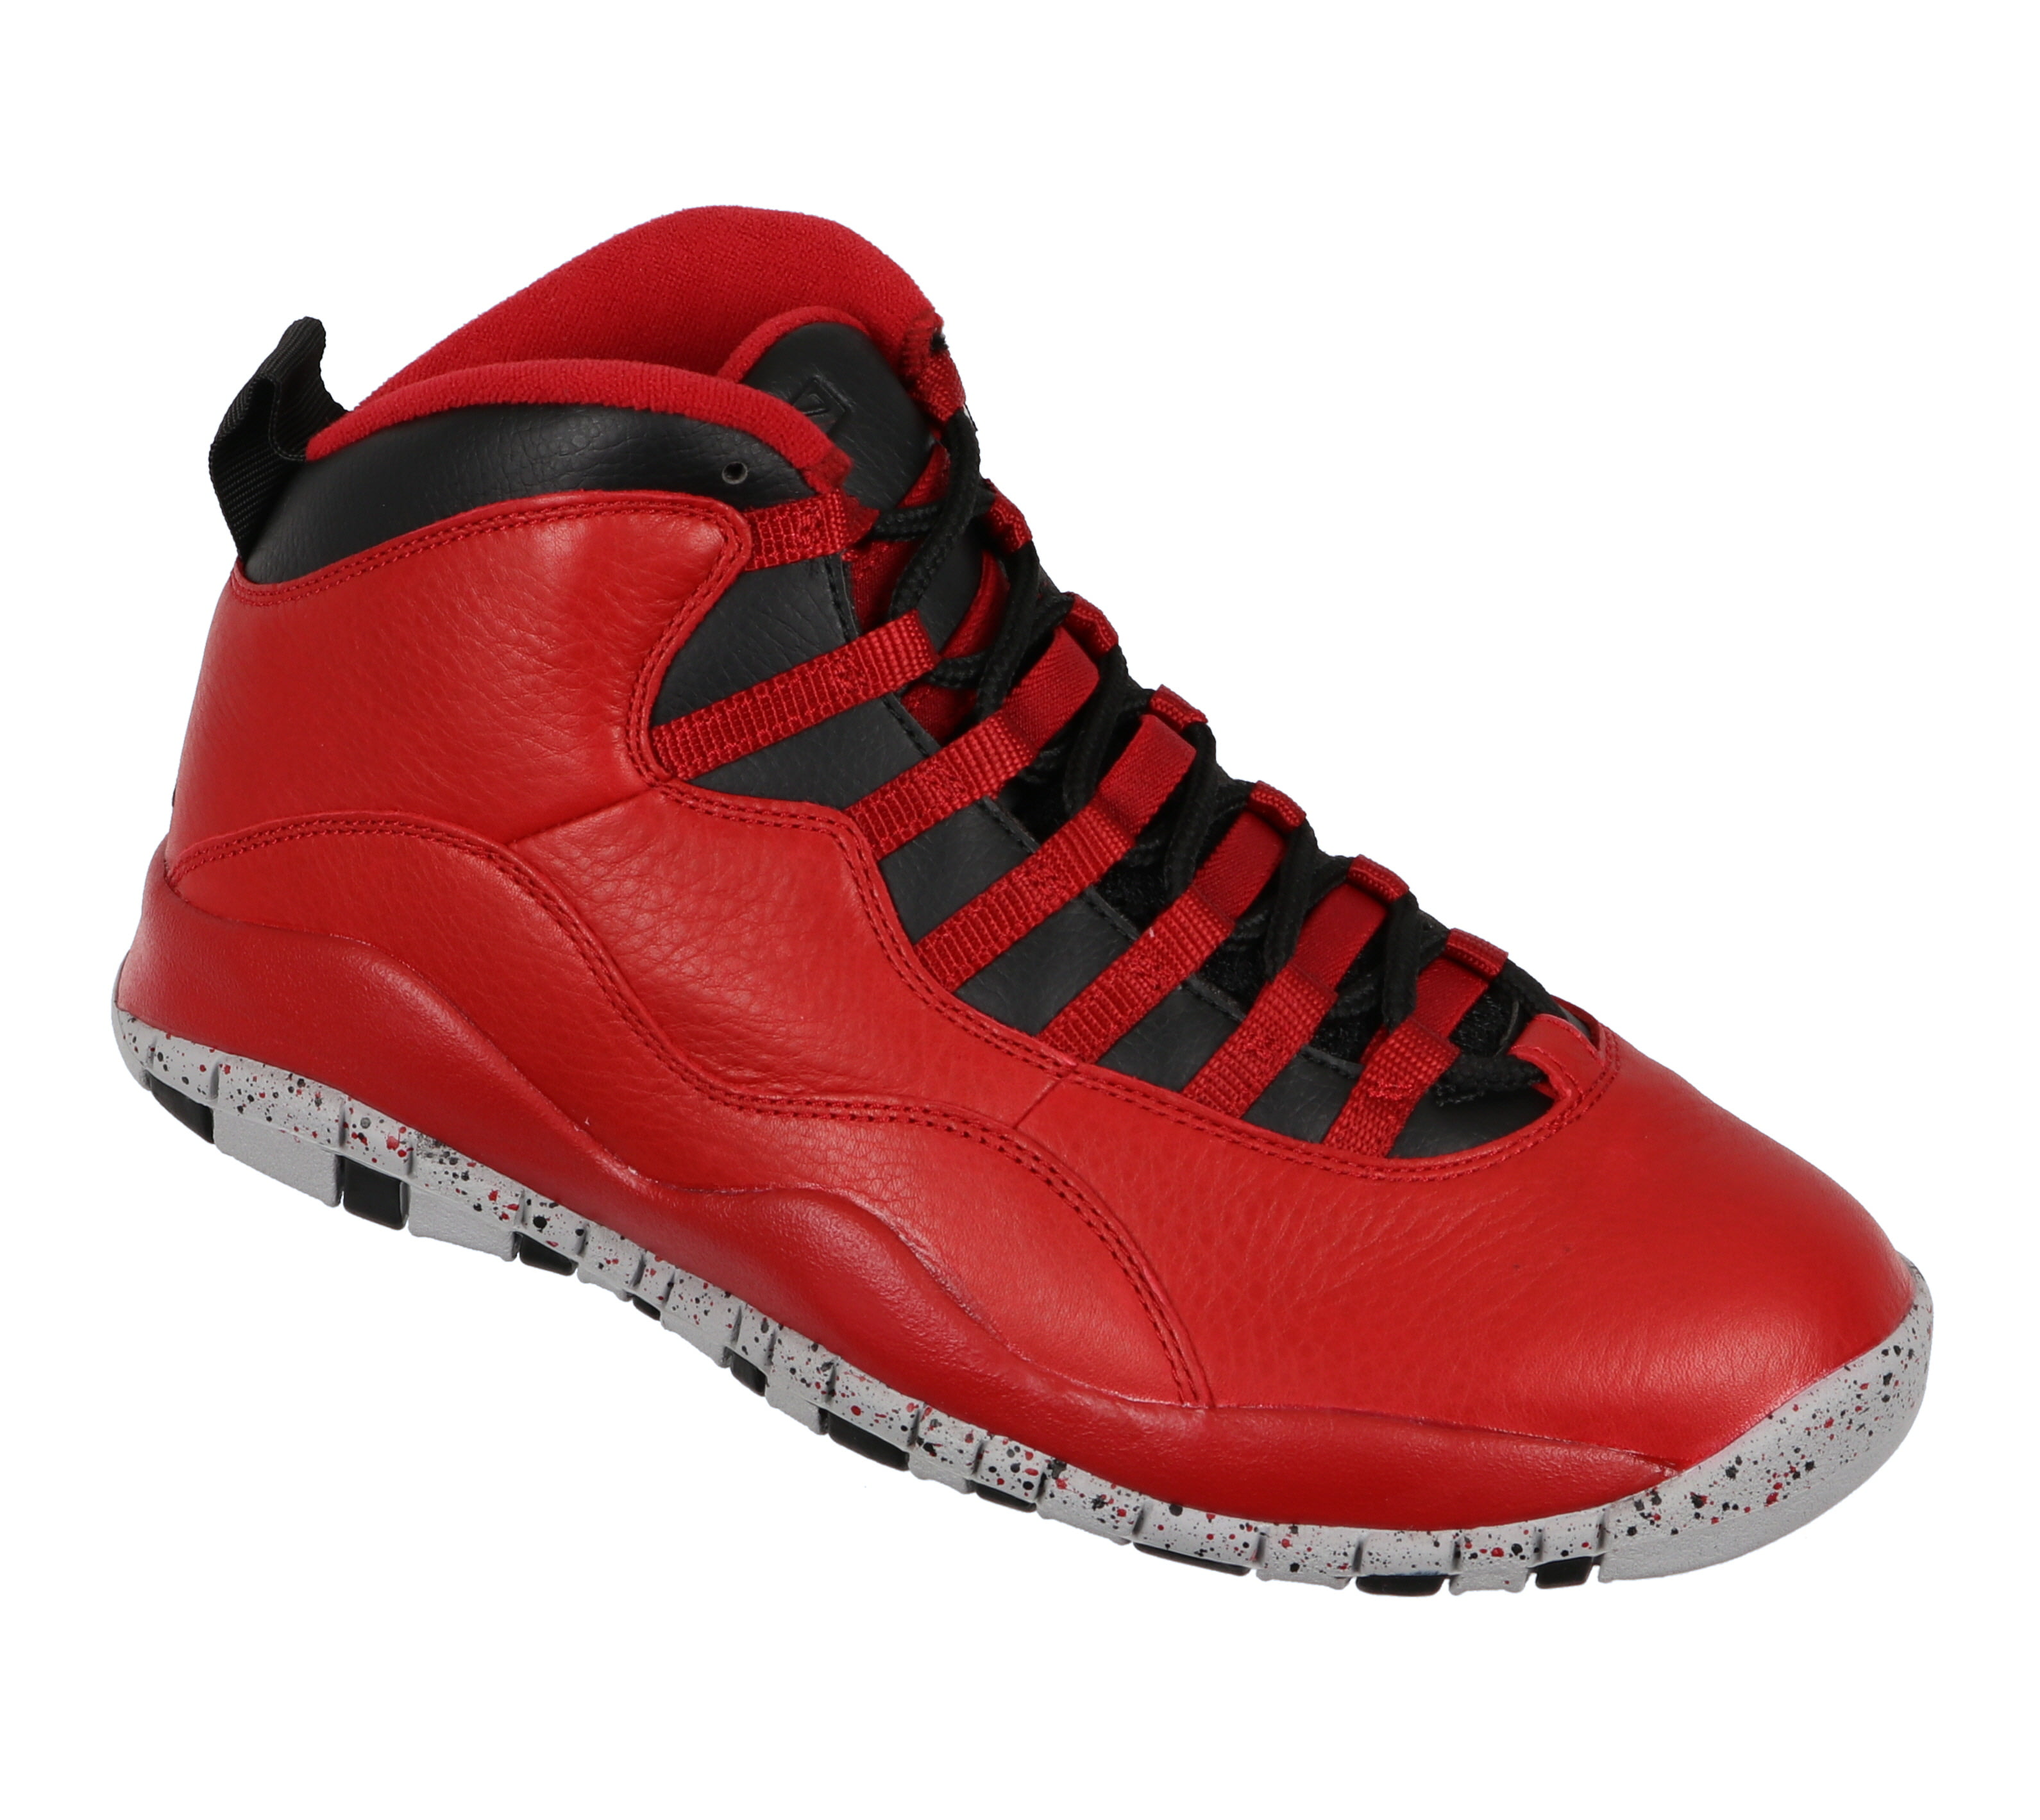 Jordan Retro 10 Shoes sz 9.5 Red Bulls Over Broadway Edition - Walmart.com